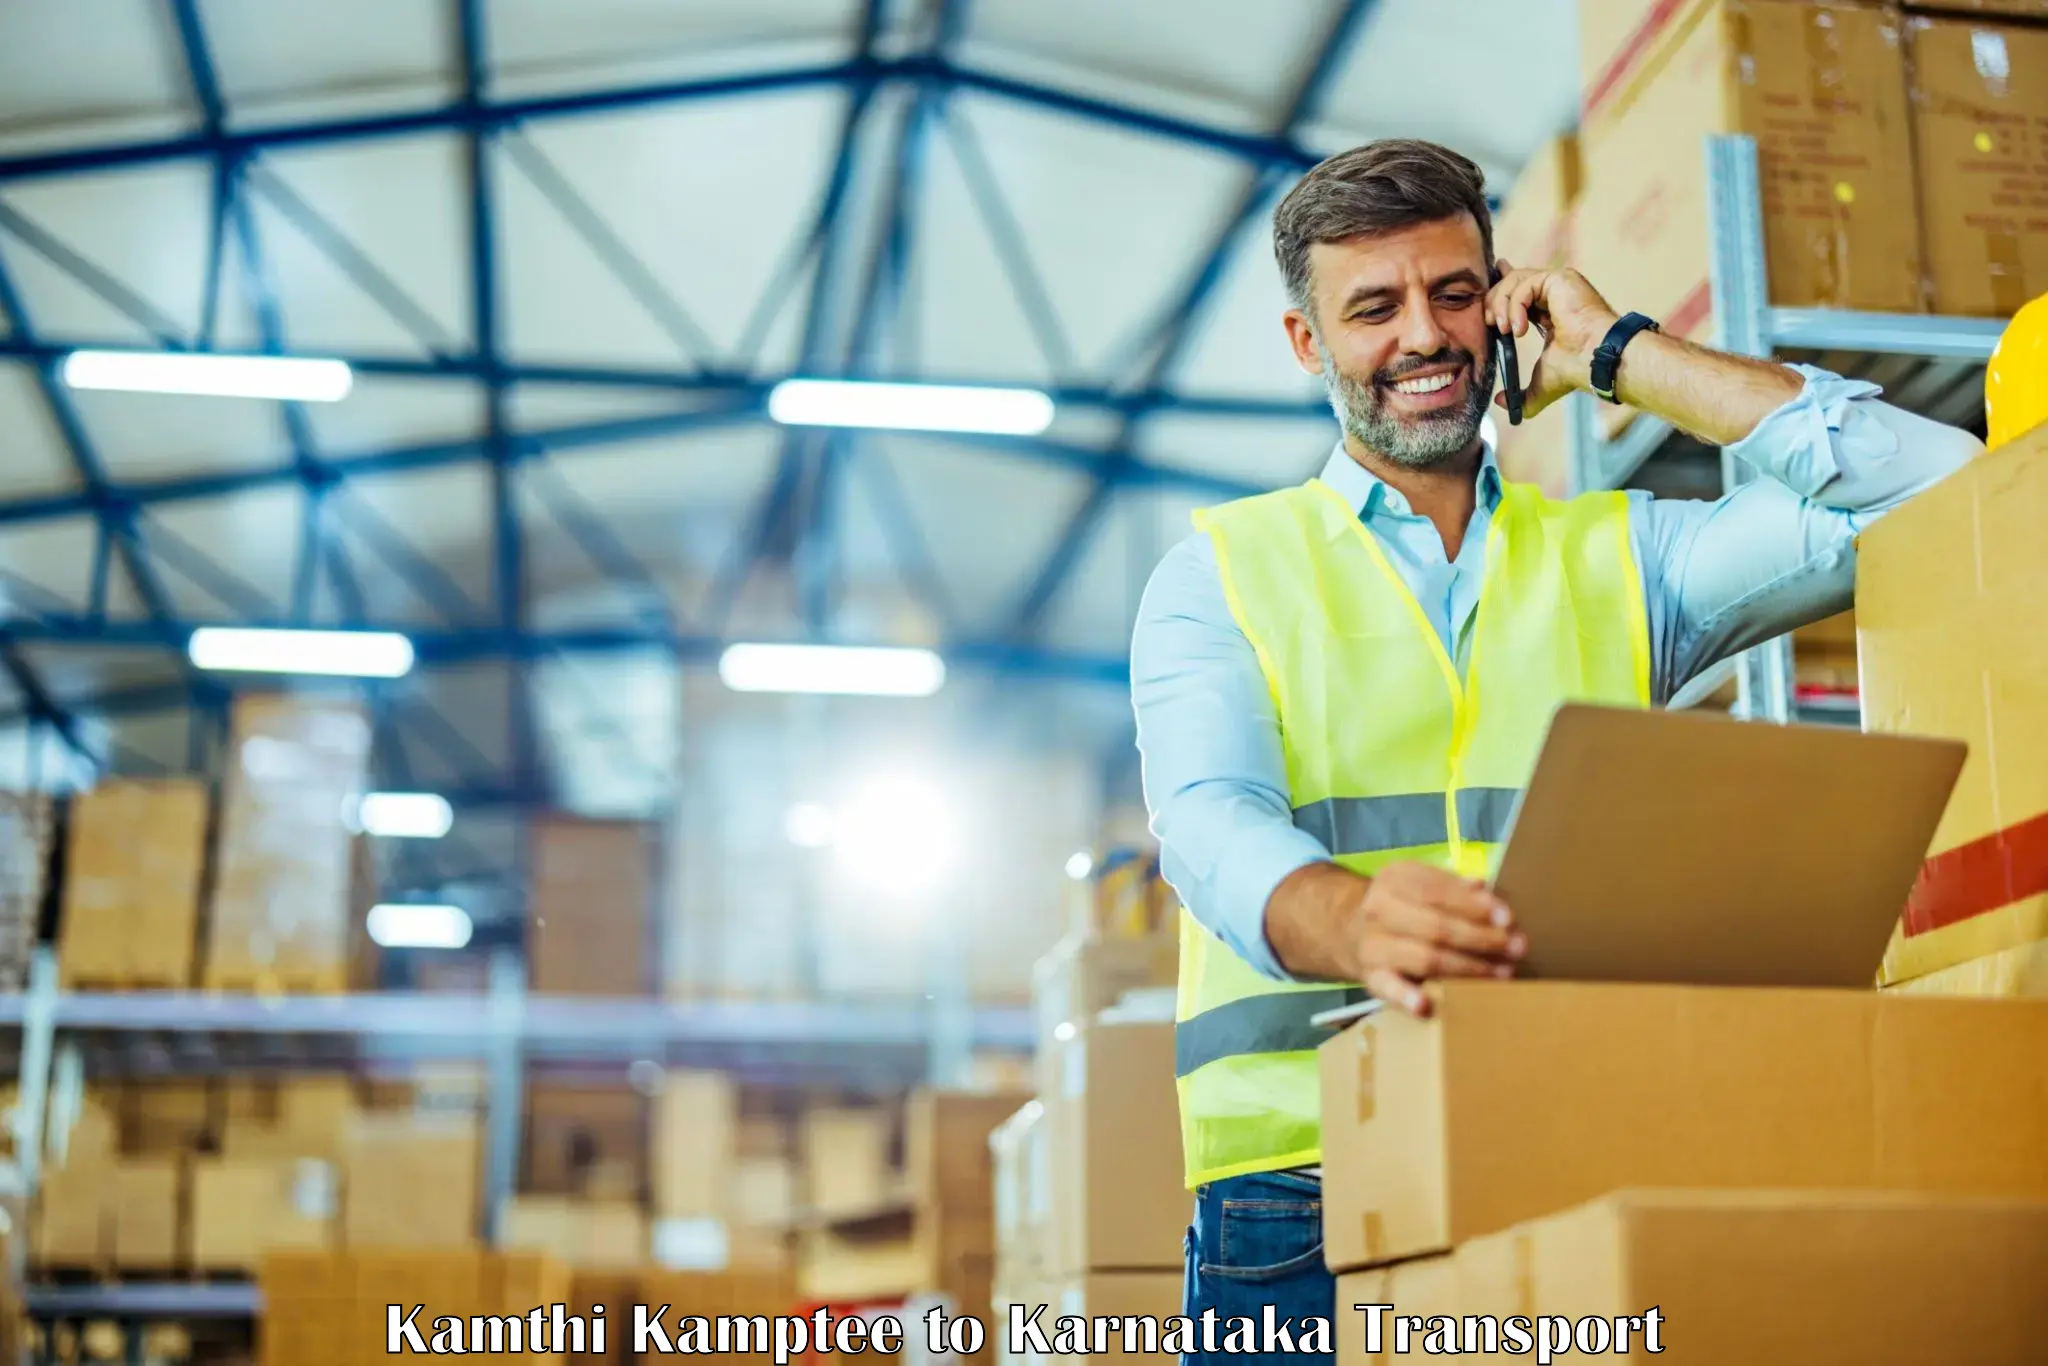 Shipping partner Kamthi Kamptee to Nelamangala